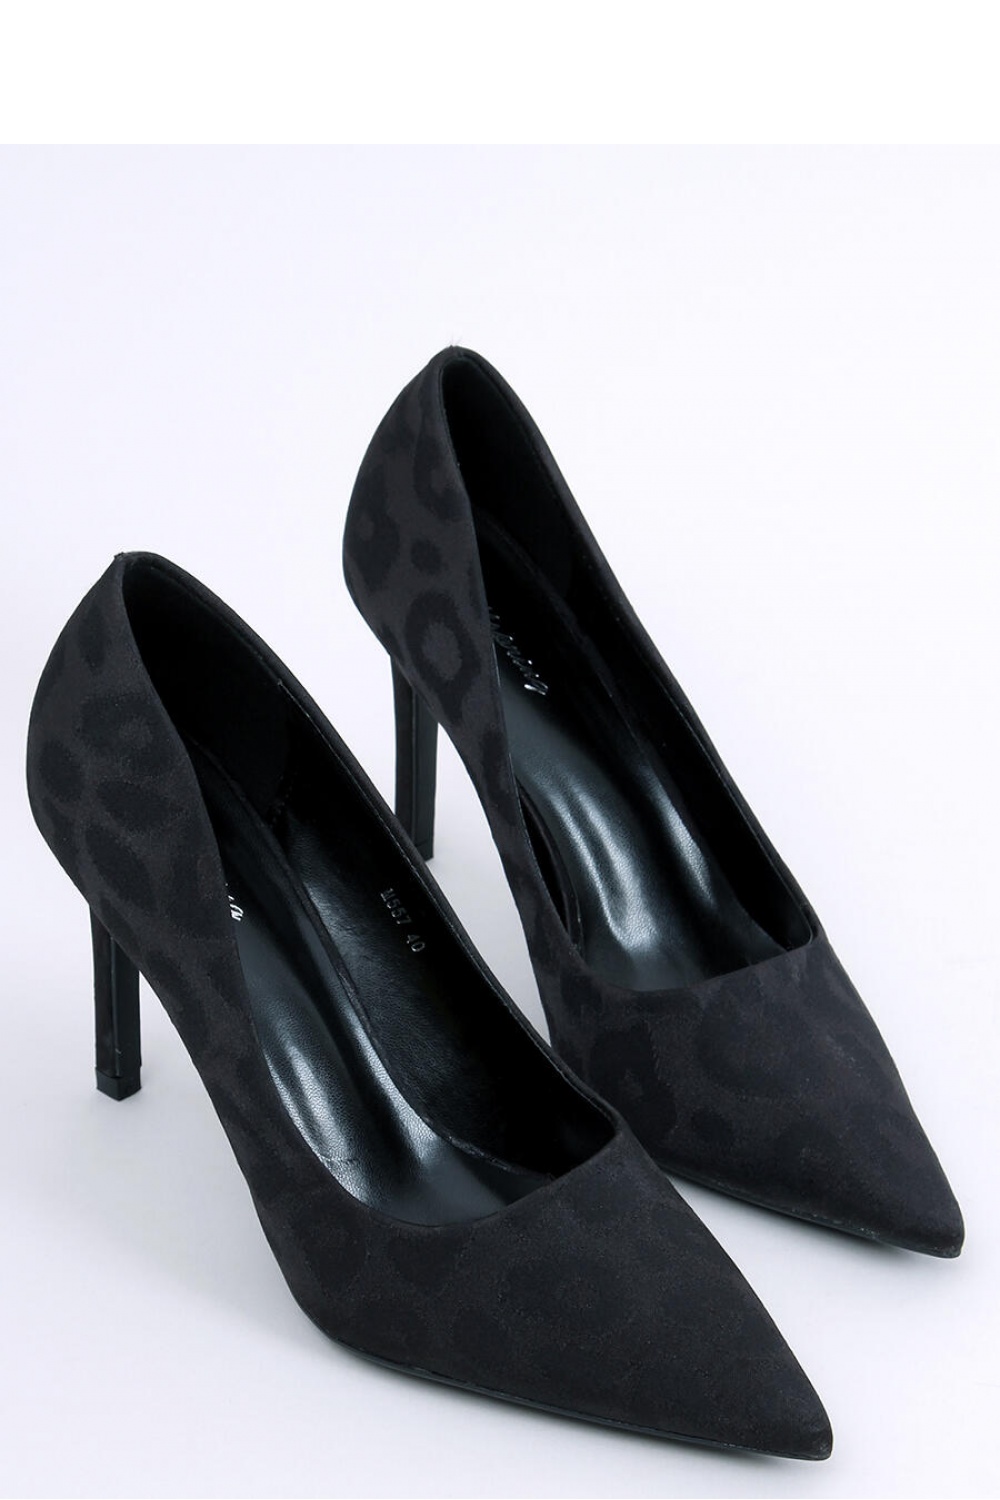 High heels model 174084 Inello